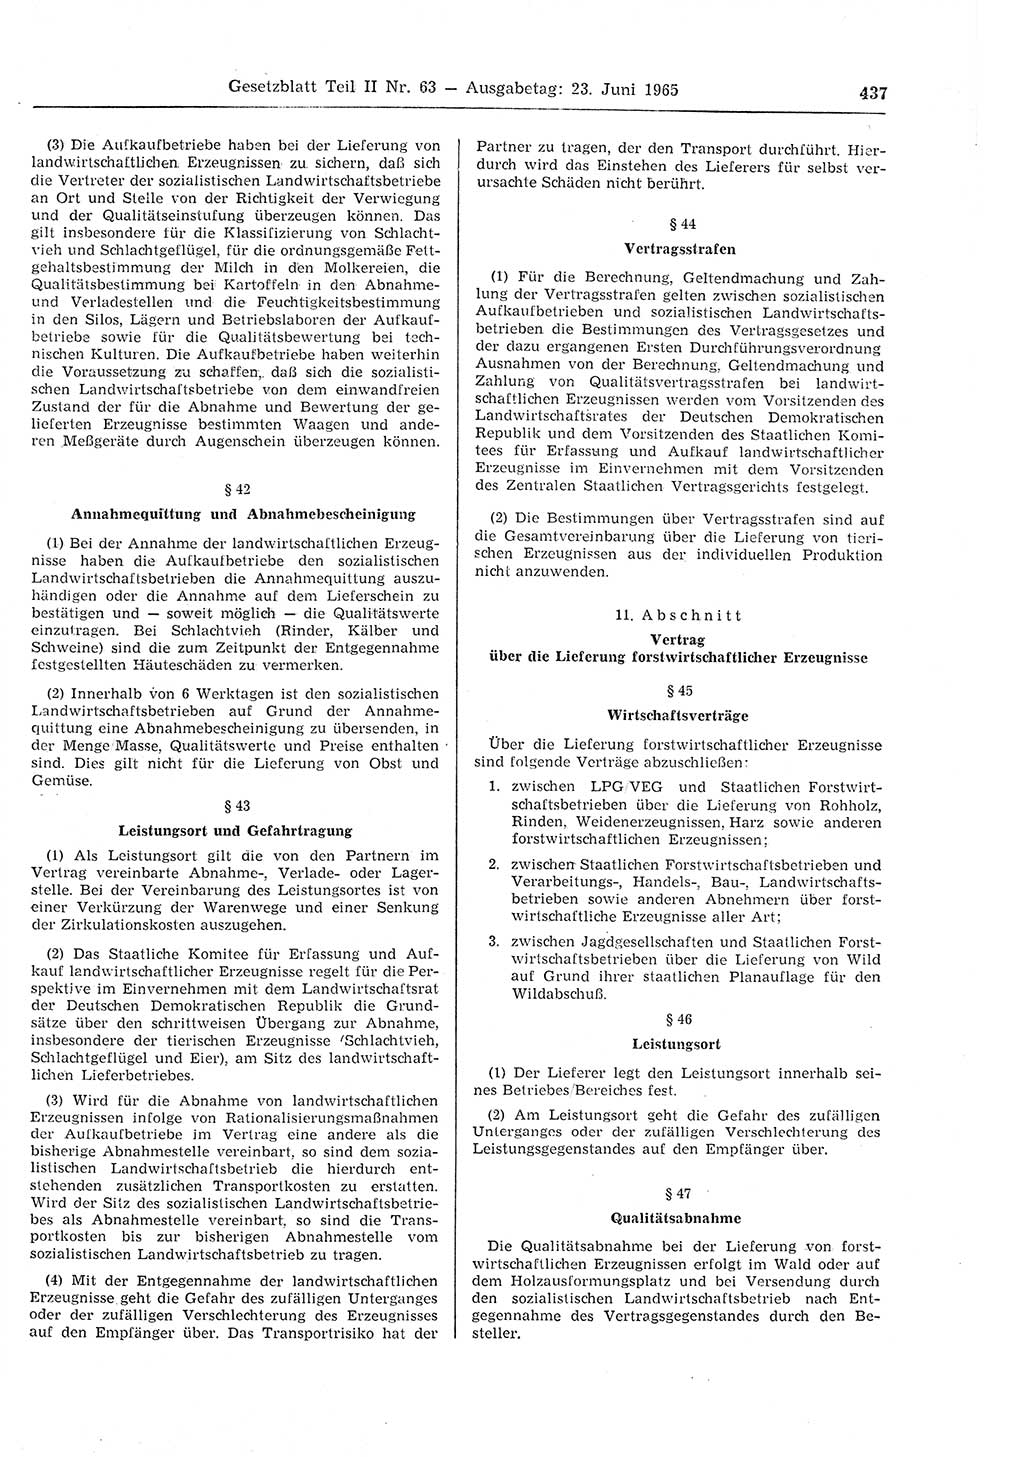 Gesetzblatt (GBl.) der Deutschen Demokratischen Republik (DDR) Teil ⅠⅠ 1965, Seite 437 (GBl. DDR ⅠⅠ 1965, S. 437)